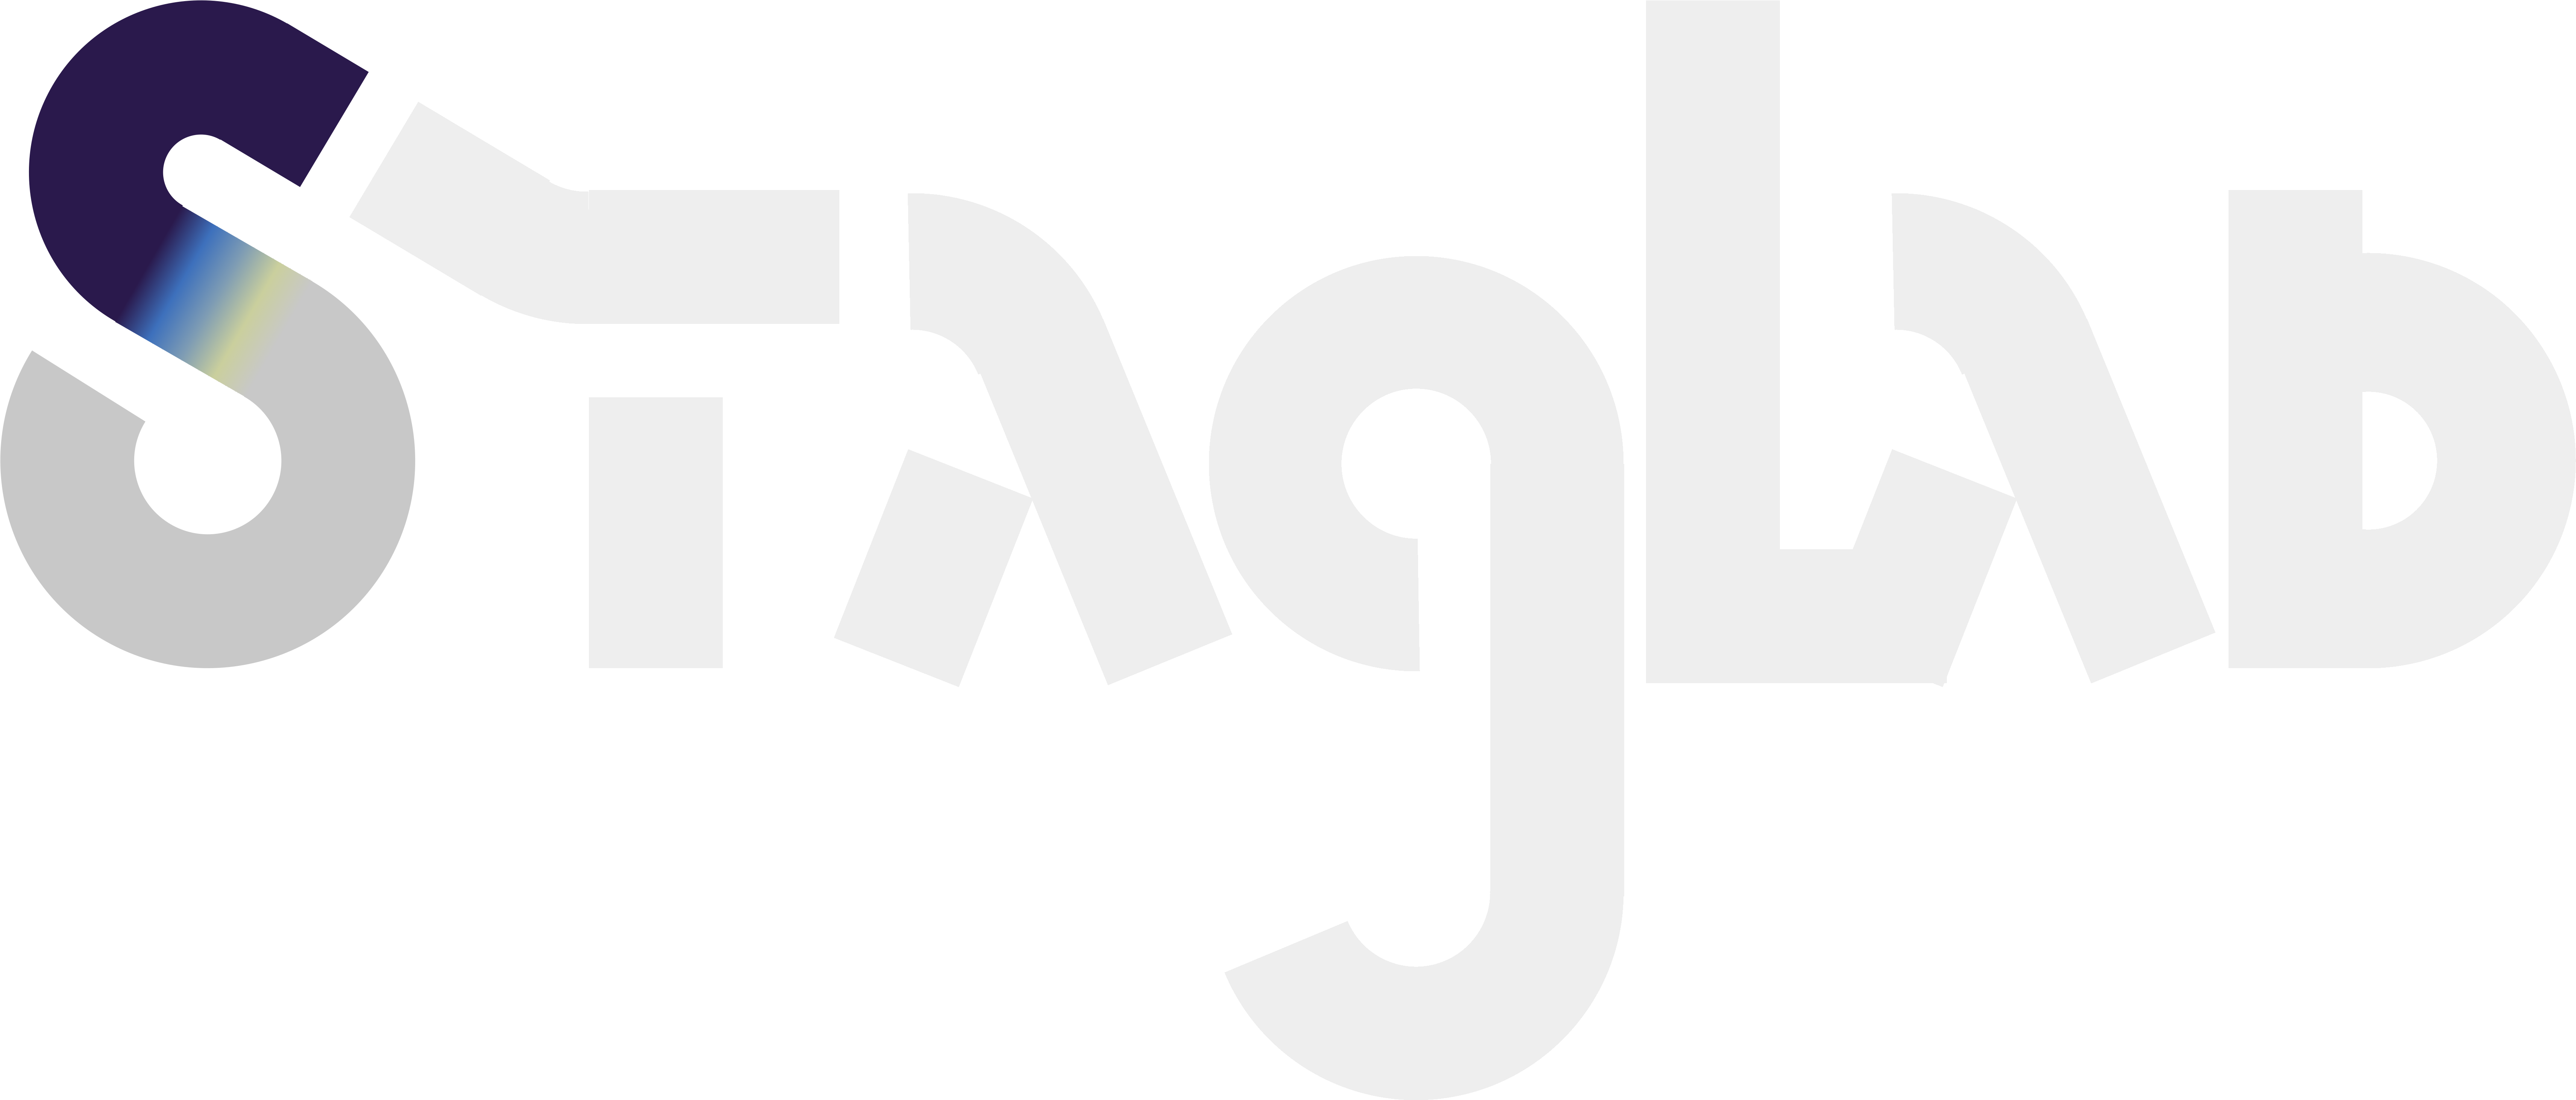 Geodynamics post-processing community effort StagLab logo